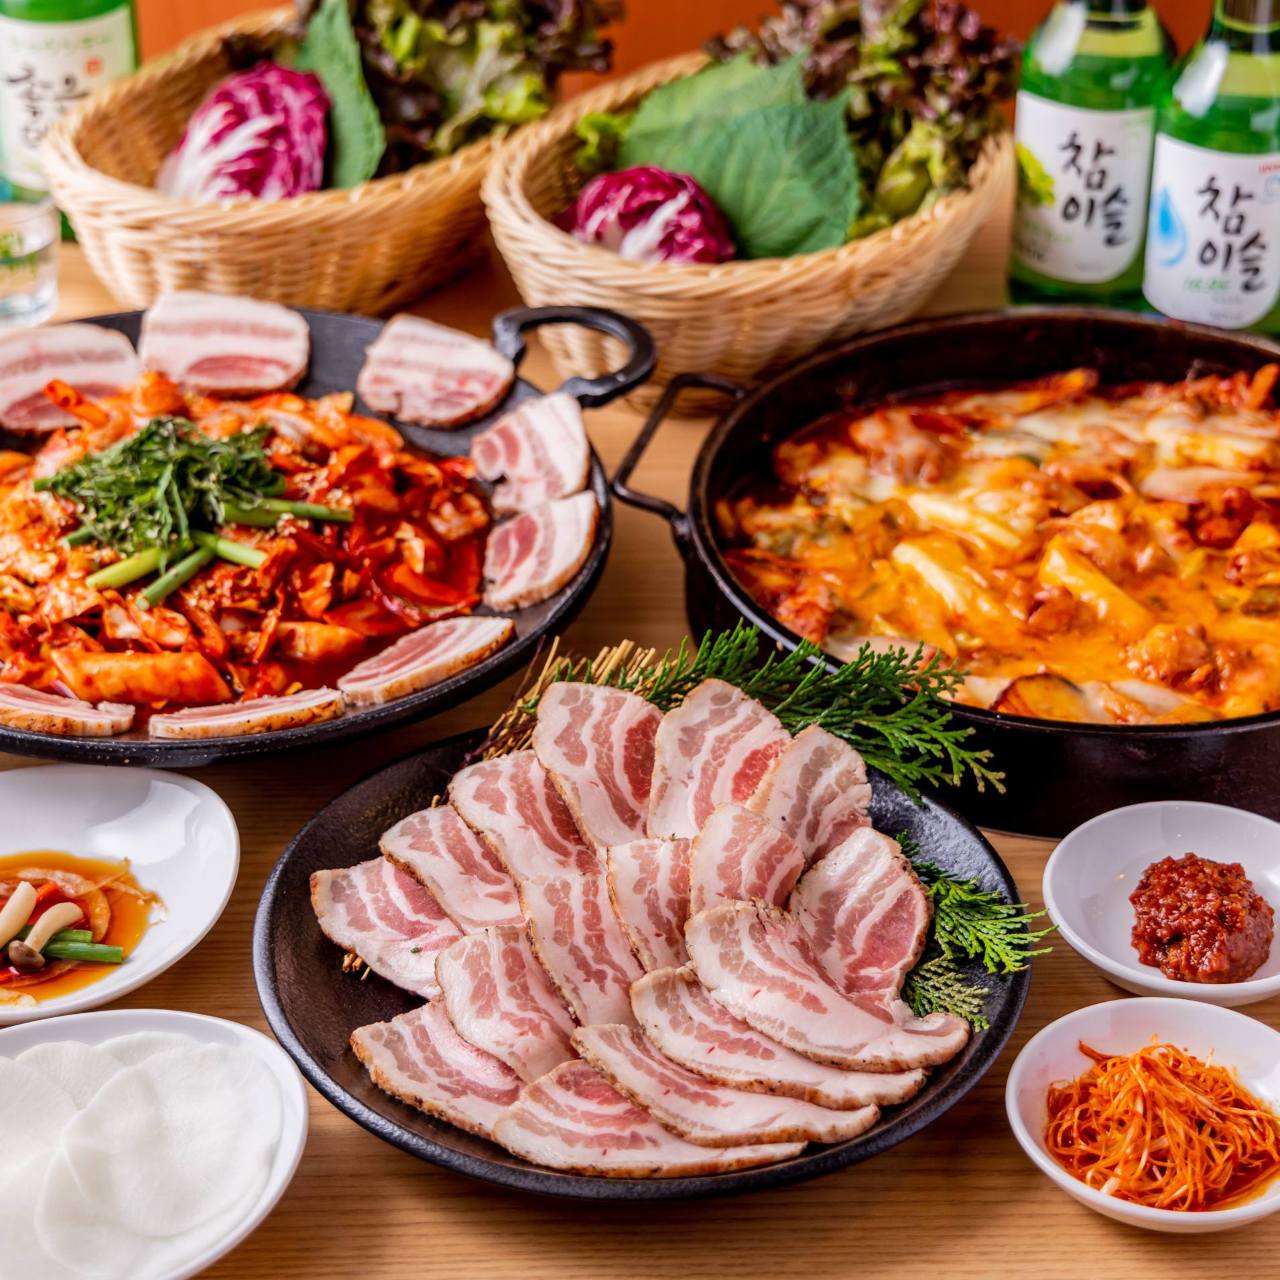 炭火焼肉 韓国料理 Kollabo 上野店 上野 焼肉 のグルメ情報 ヒトサラ